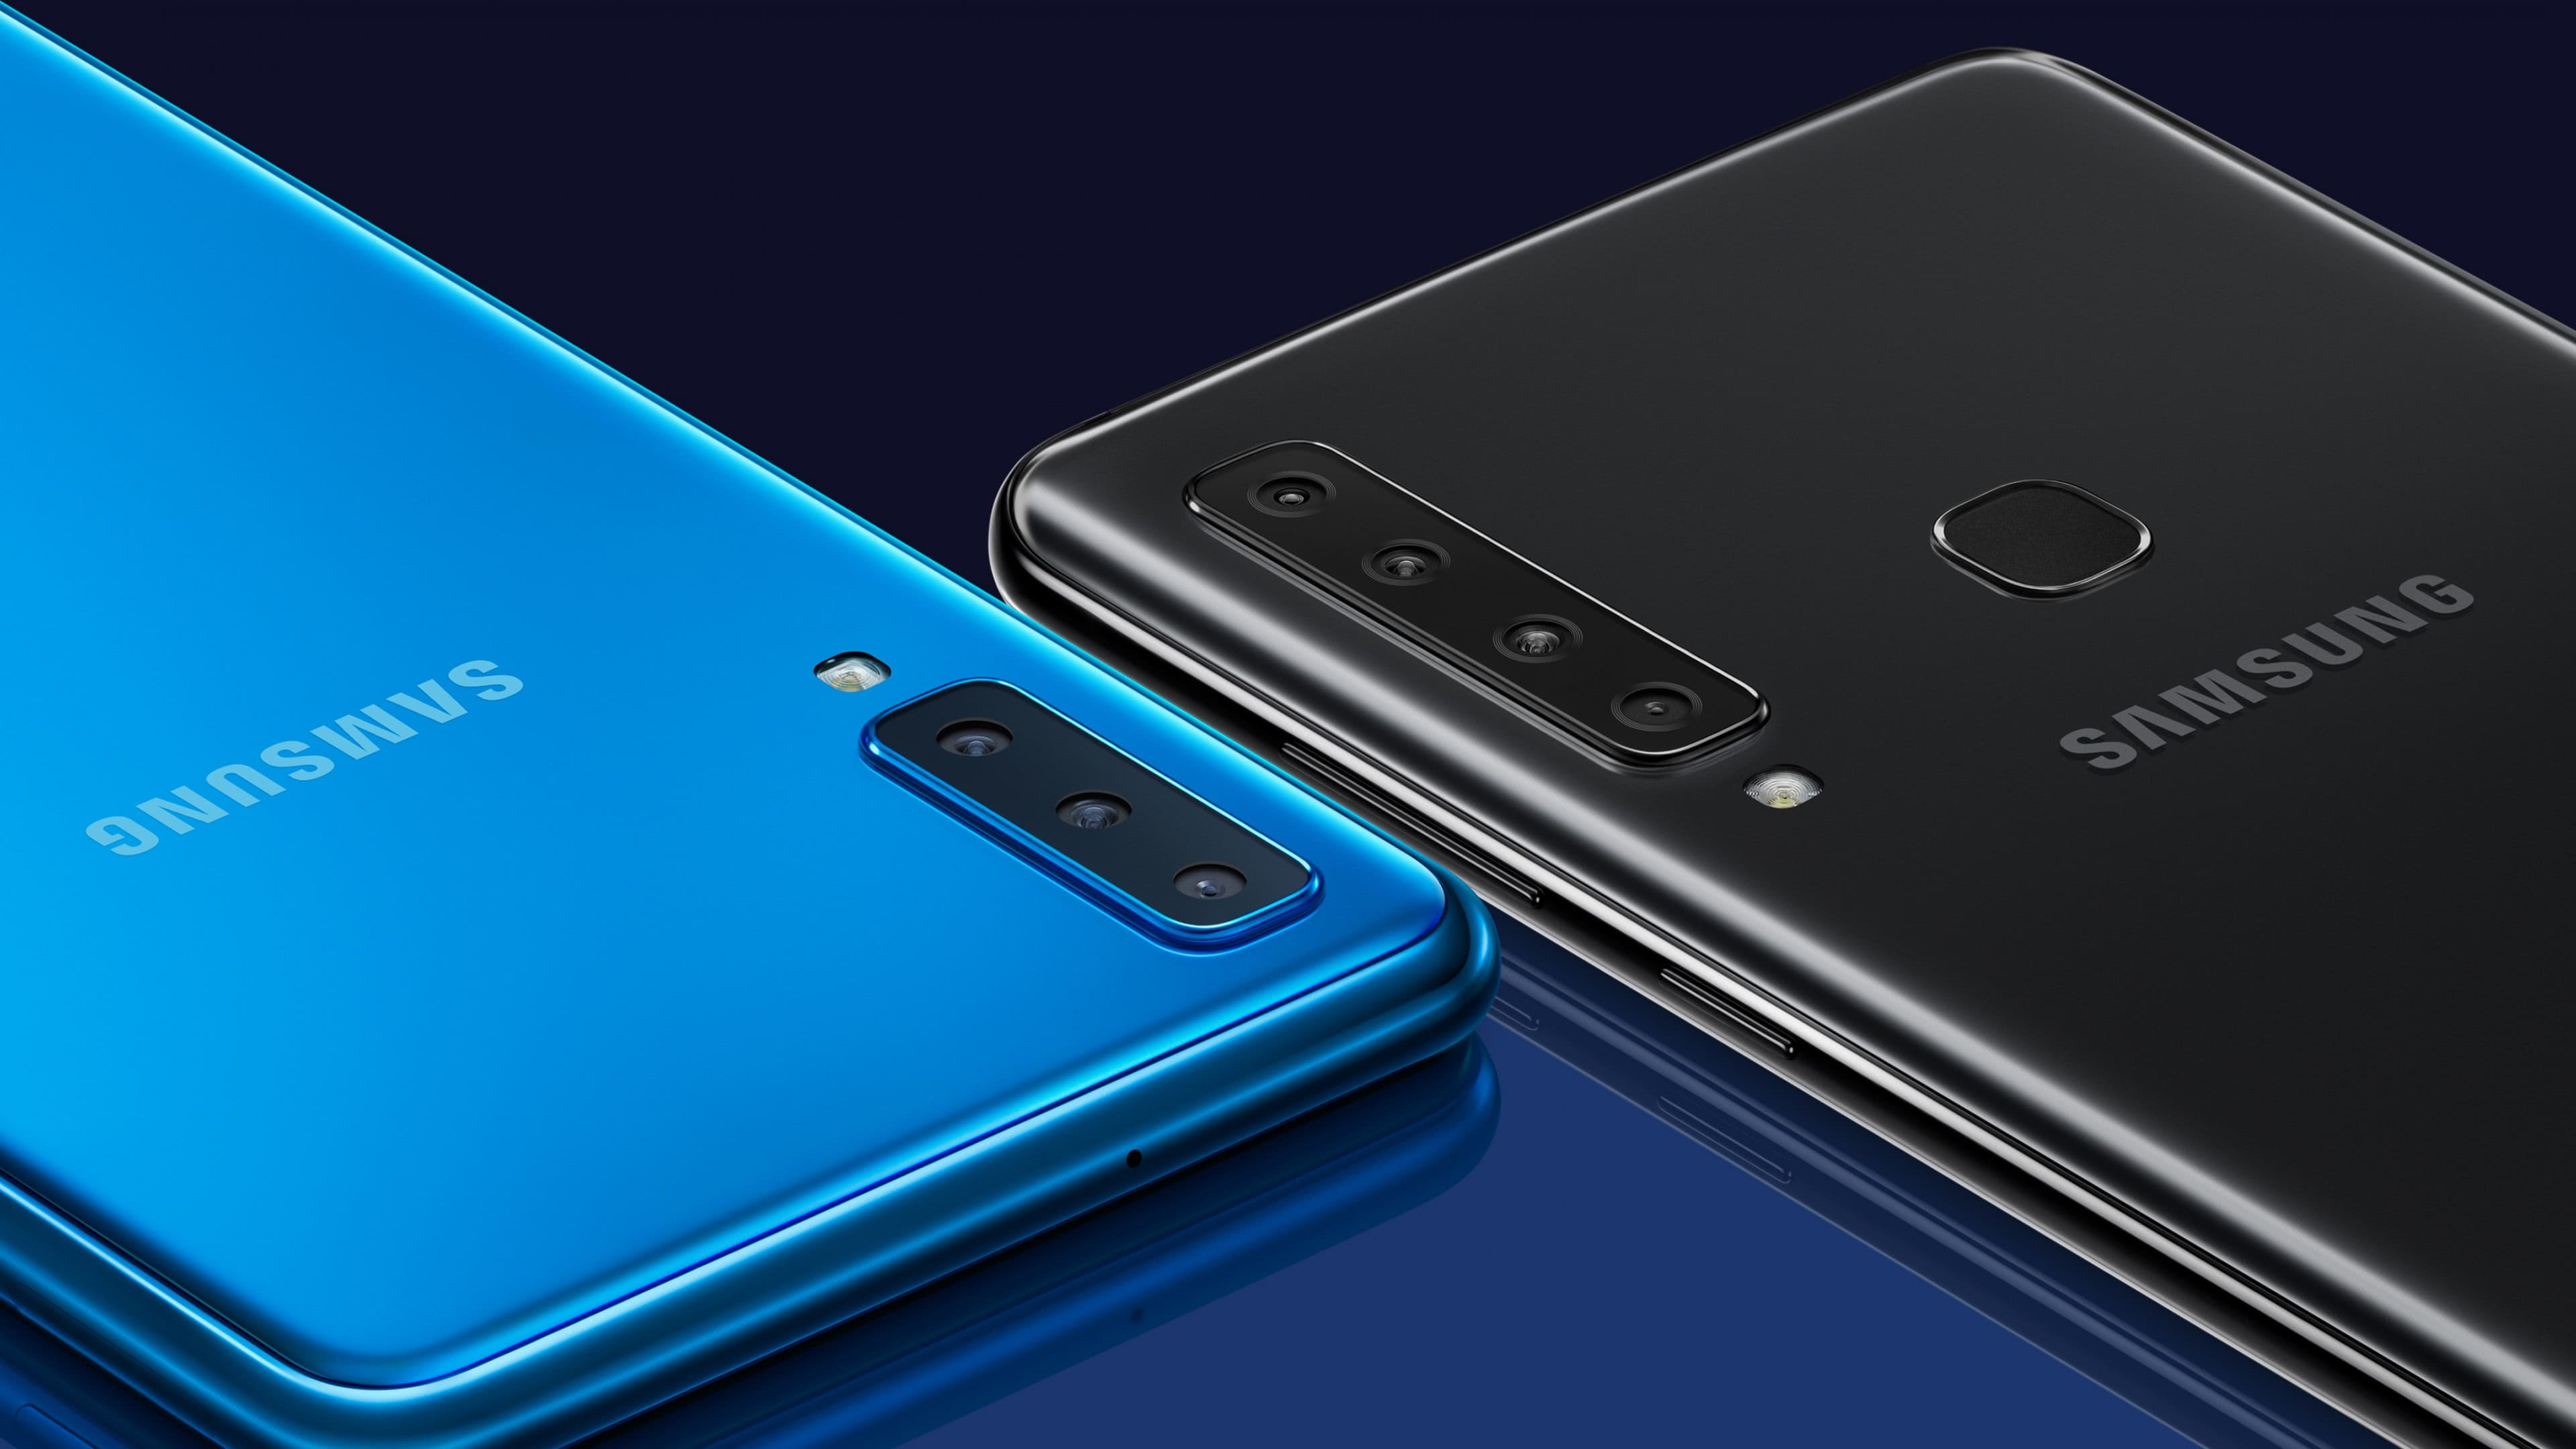 Samsung Galaxy A9 Blue And Black UHD 4K